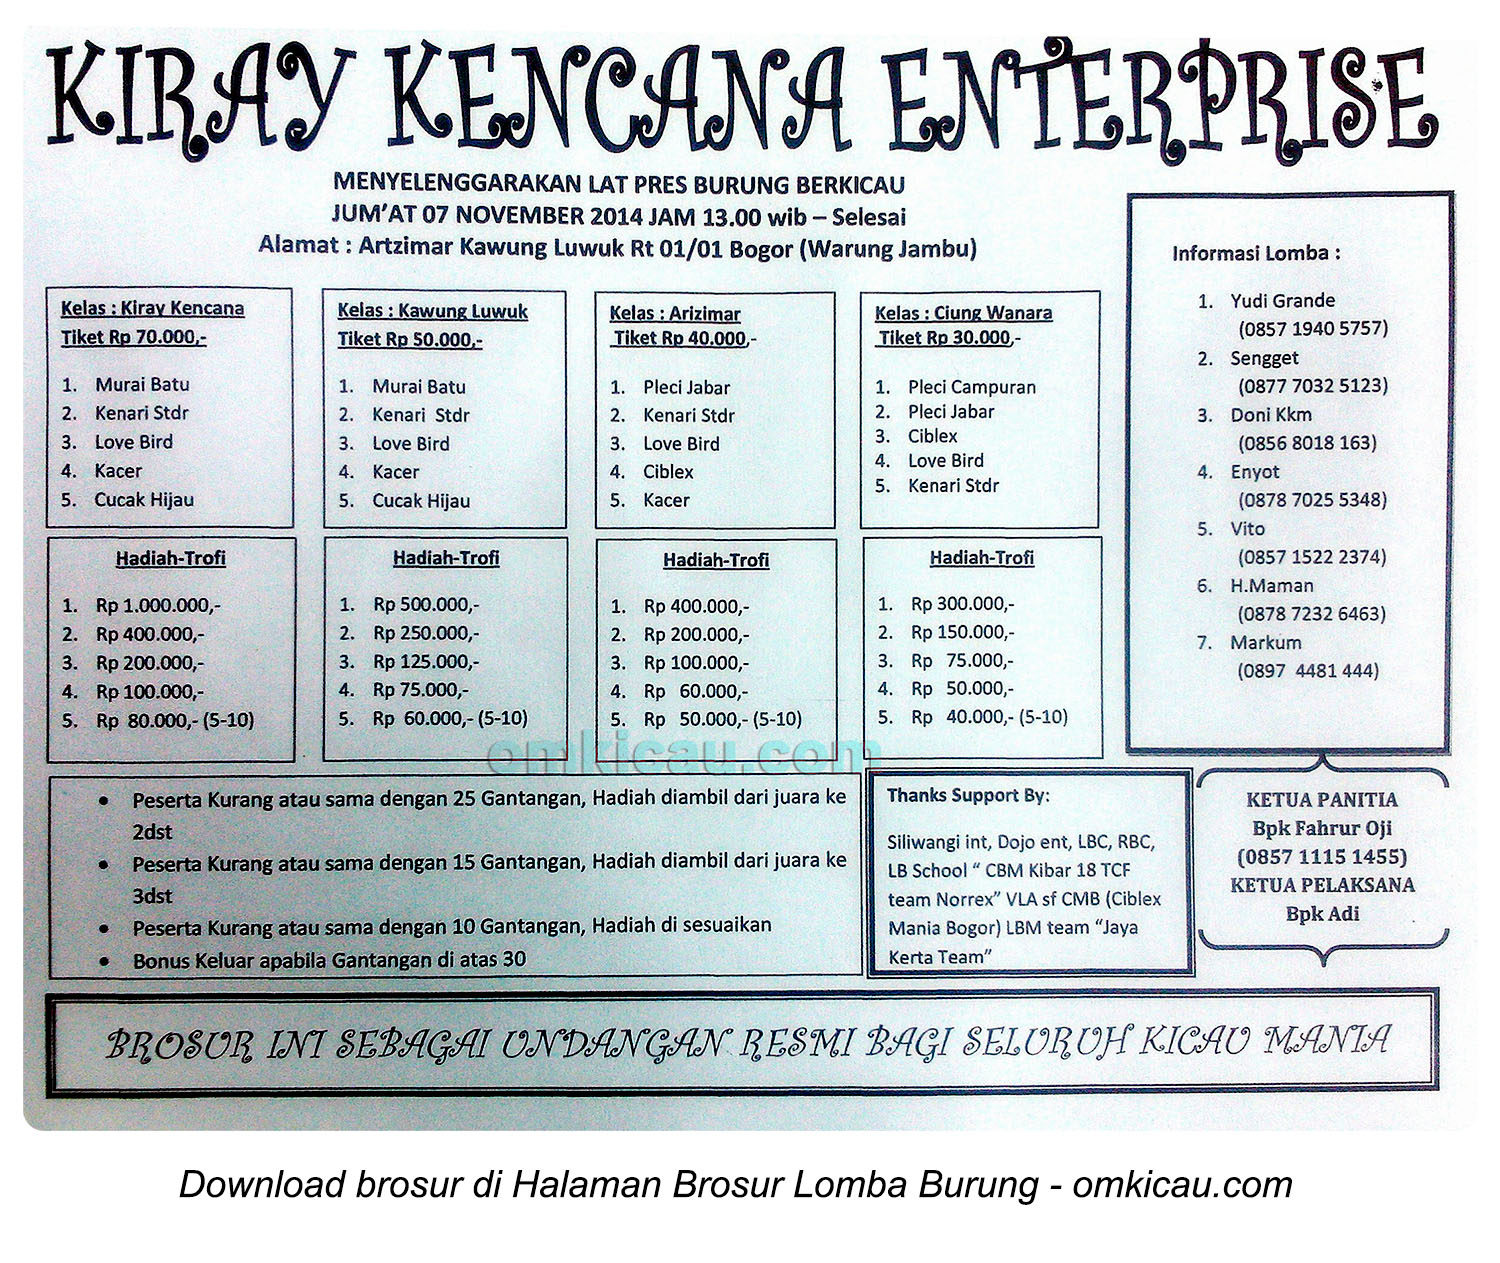 Brosur Latpres Kiray Kencana Enterprise, Bogor, 7 November 2014